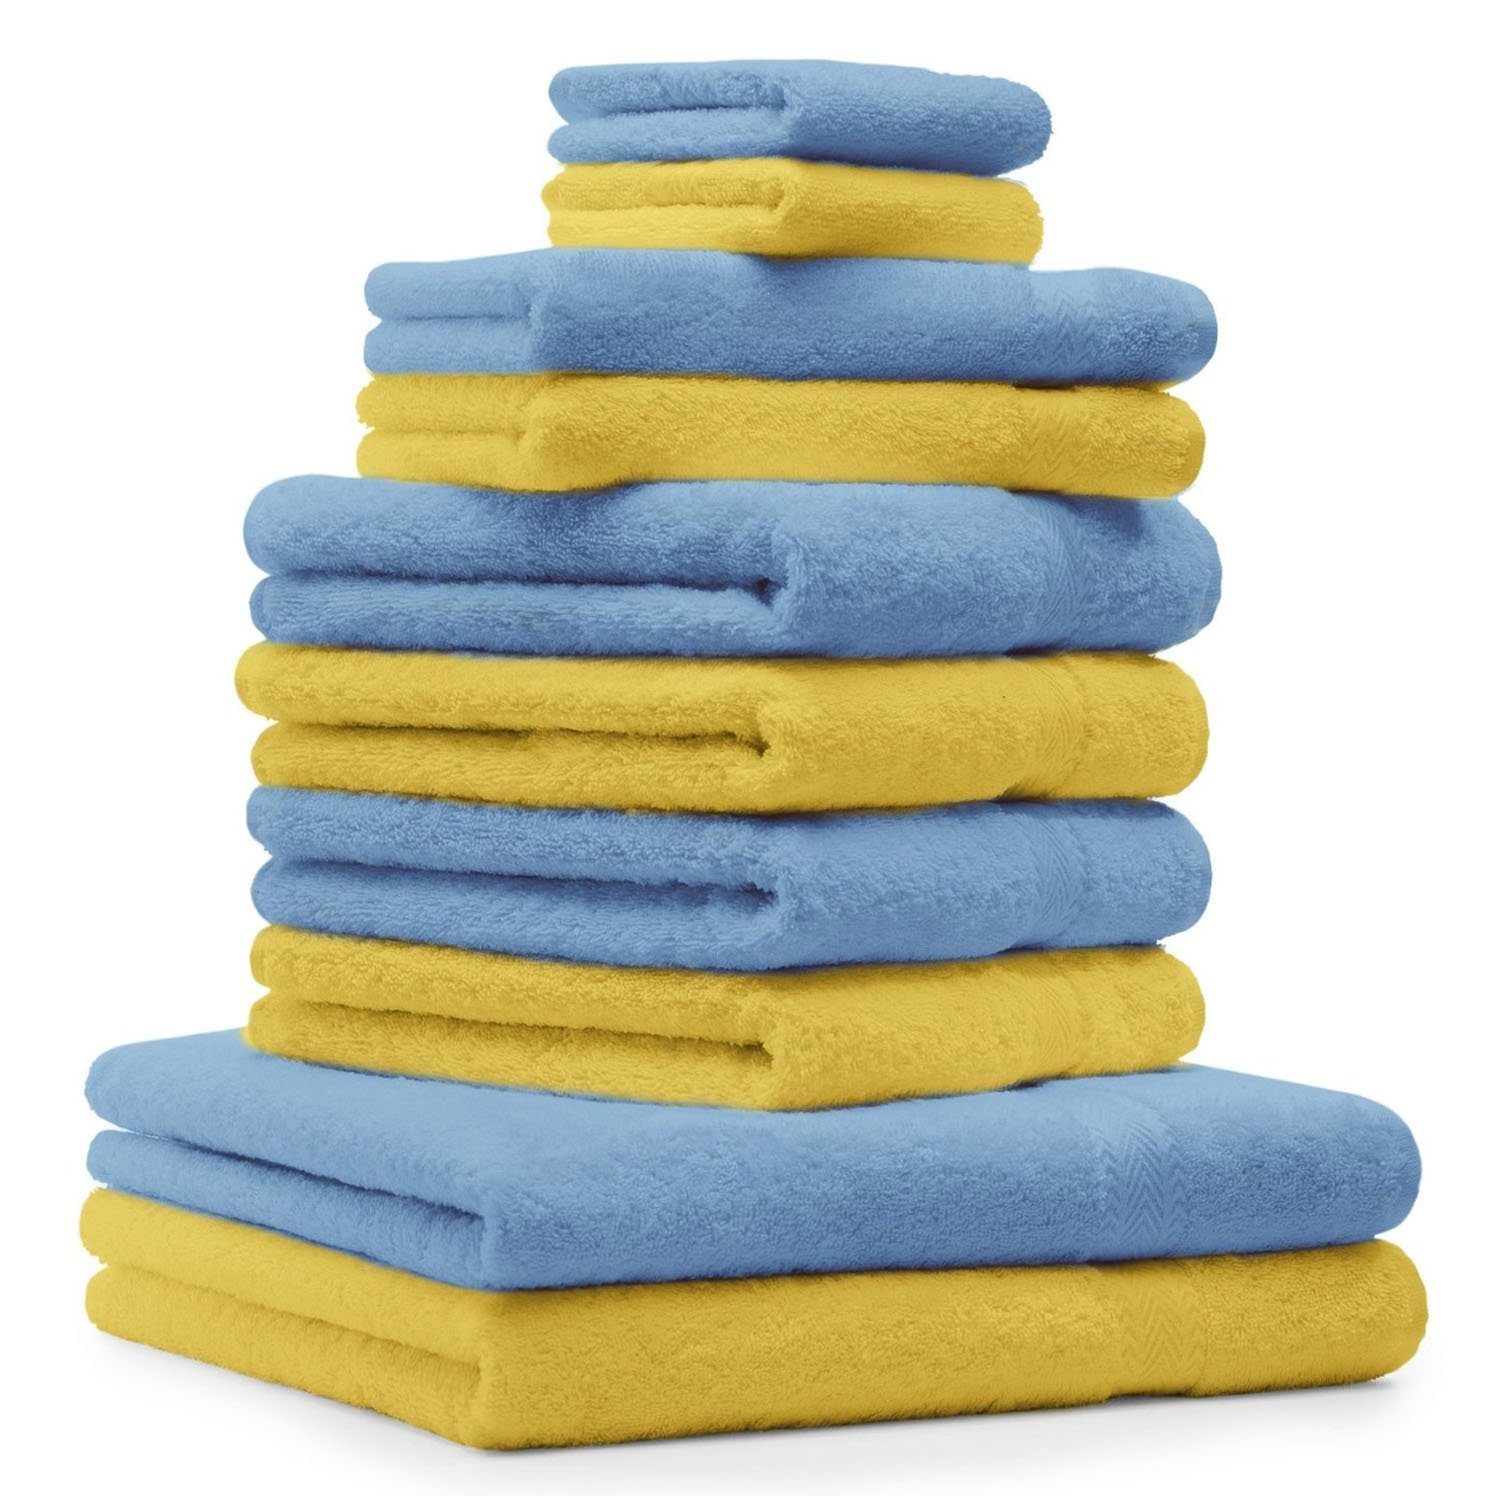 Betz Handtuch Set 10-TLG. Handtuch-Set Classic Farbe gelb und hellblau, 100% Baumwolle